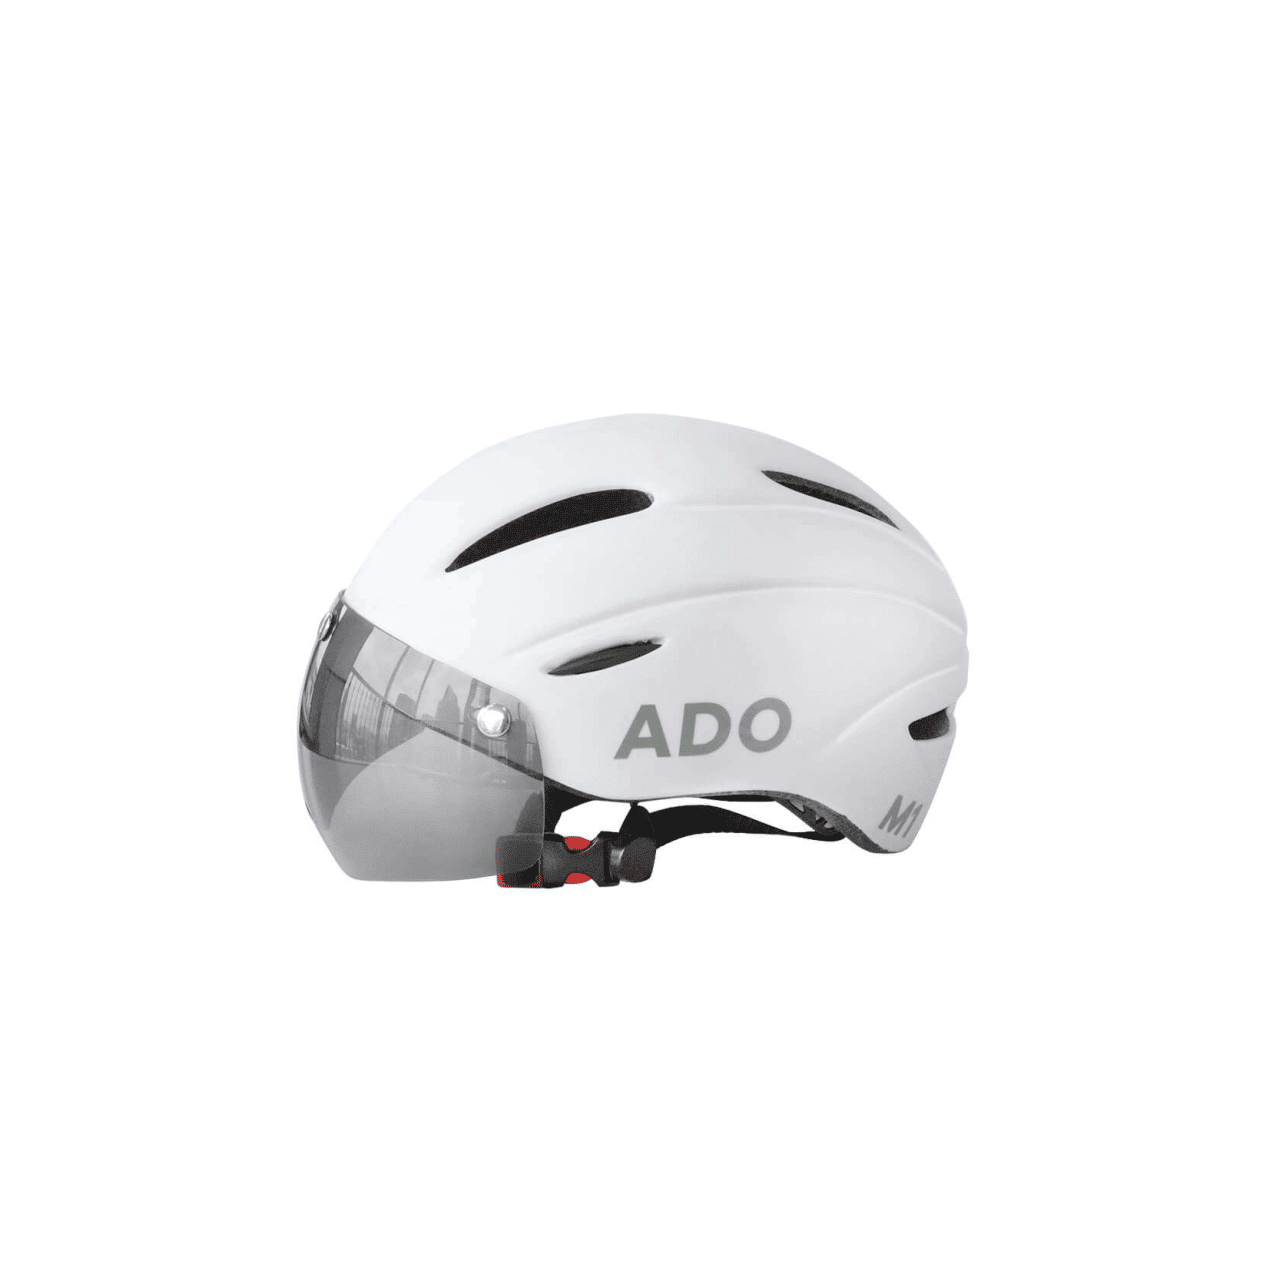 Verstellbarer Helm für ADO Ebike - ADO